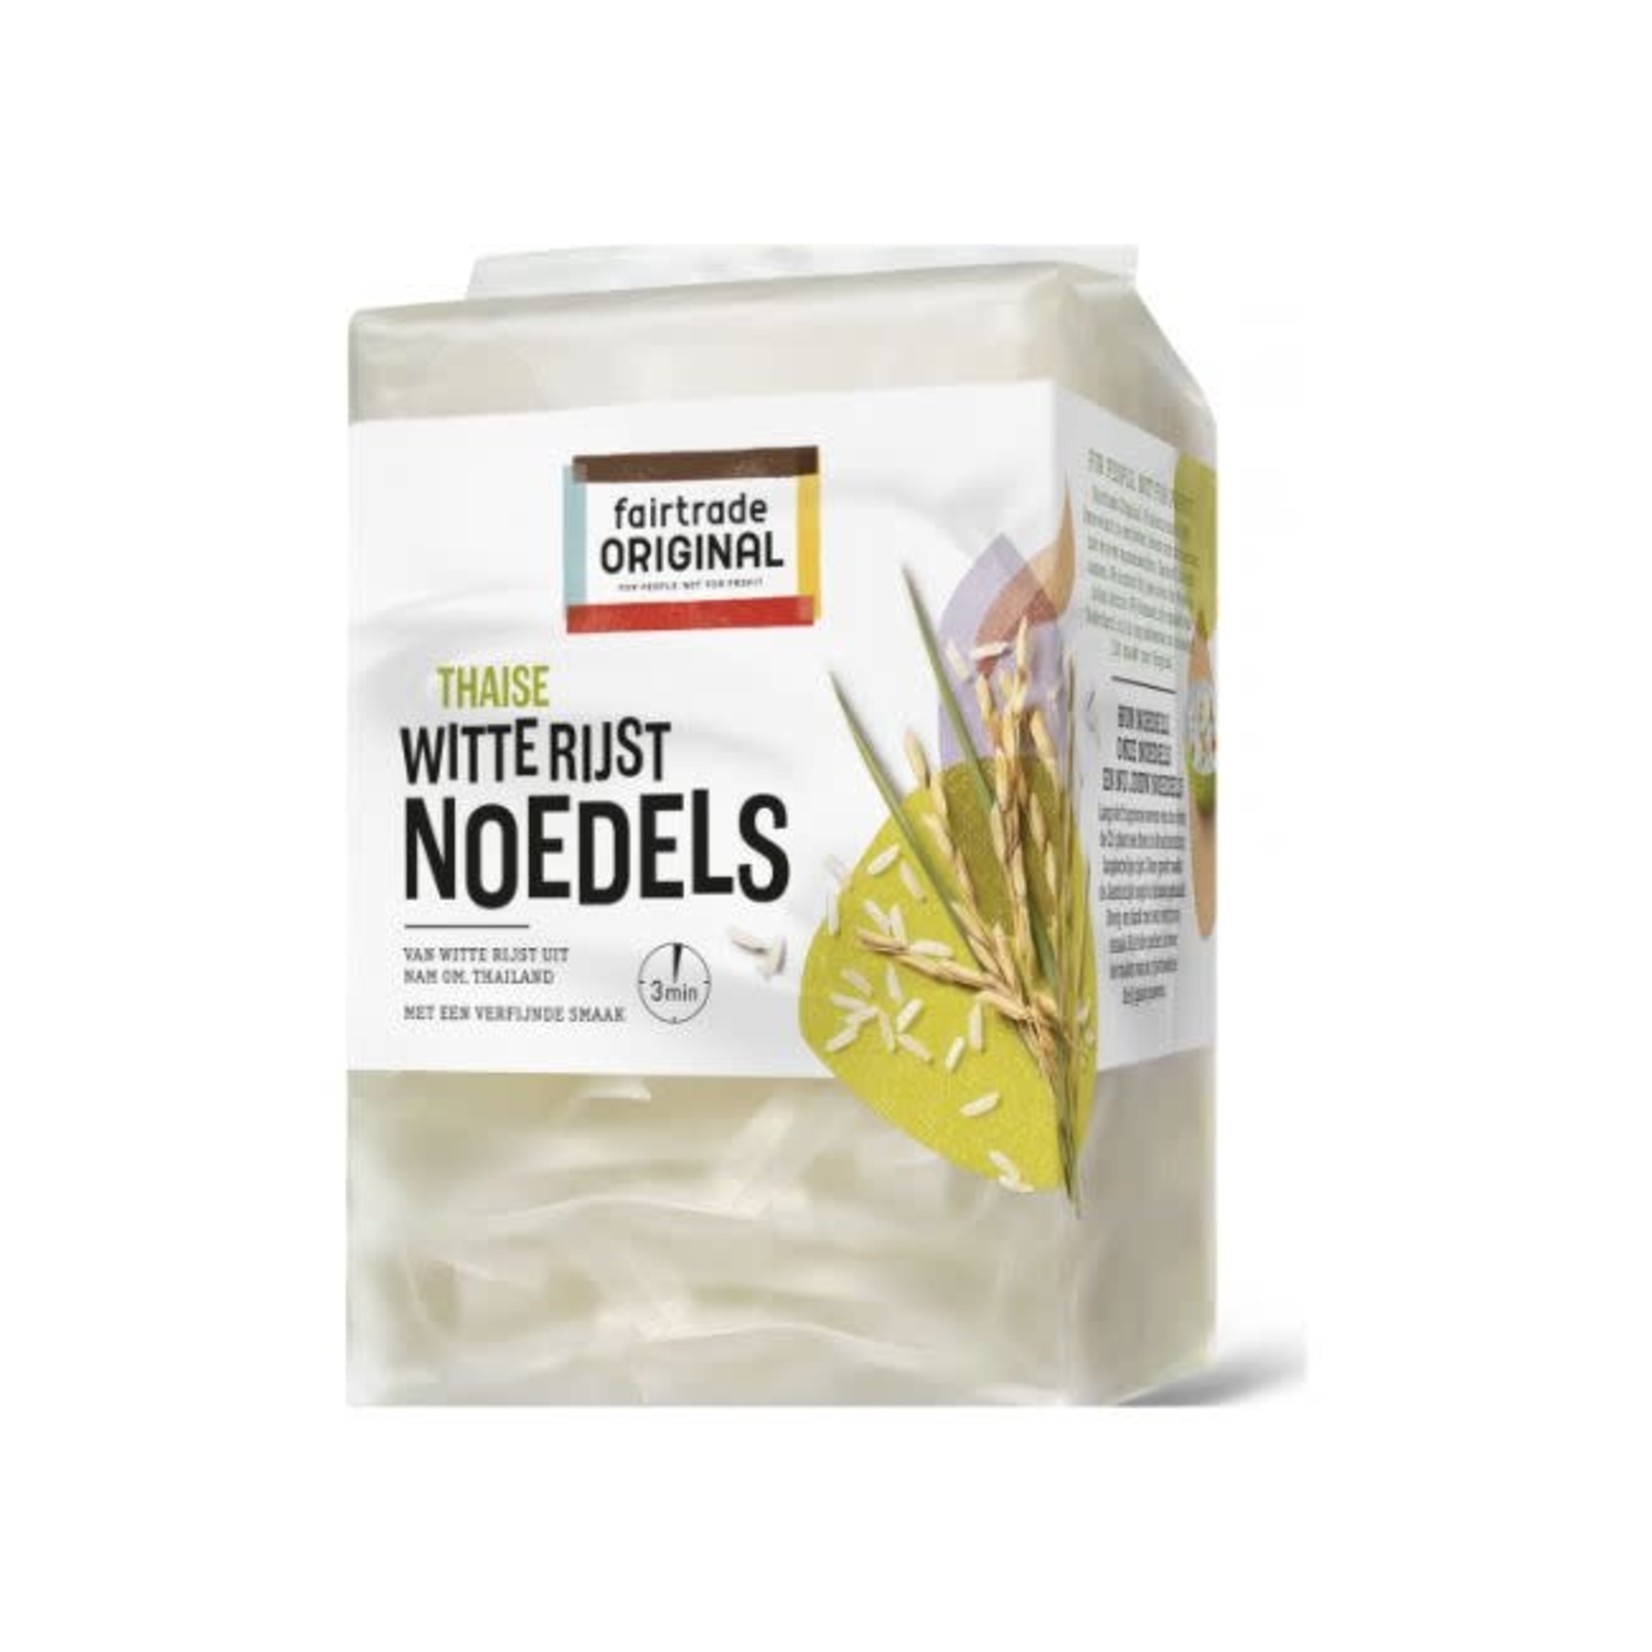 Fairtrade Original Noedels witte rijst